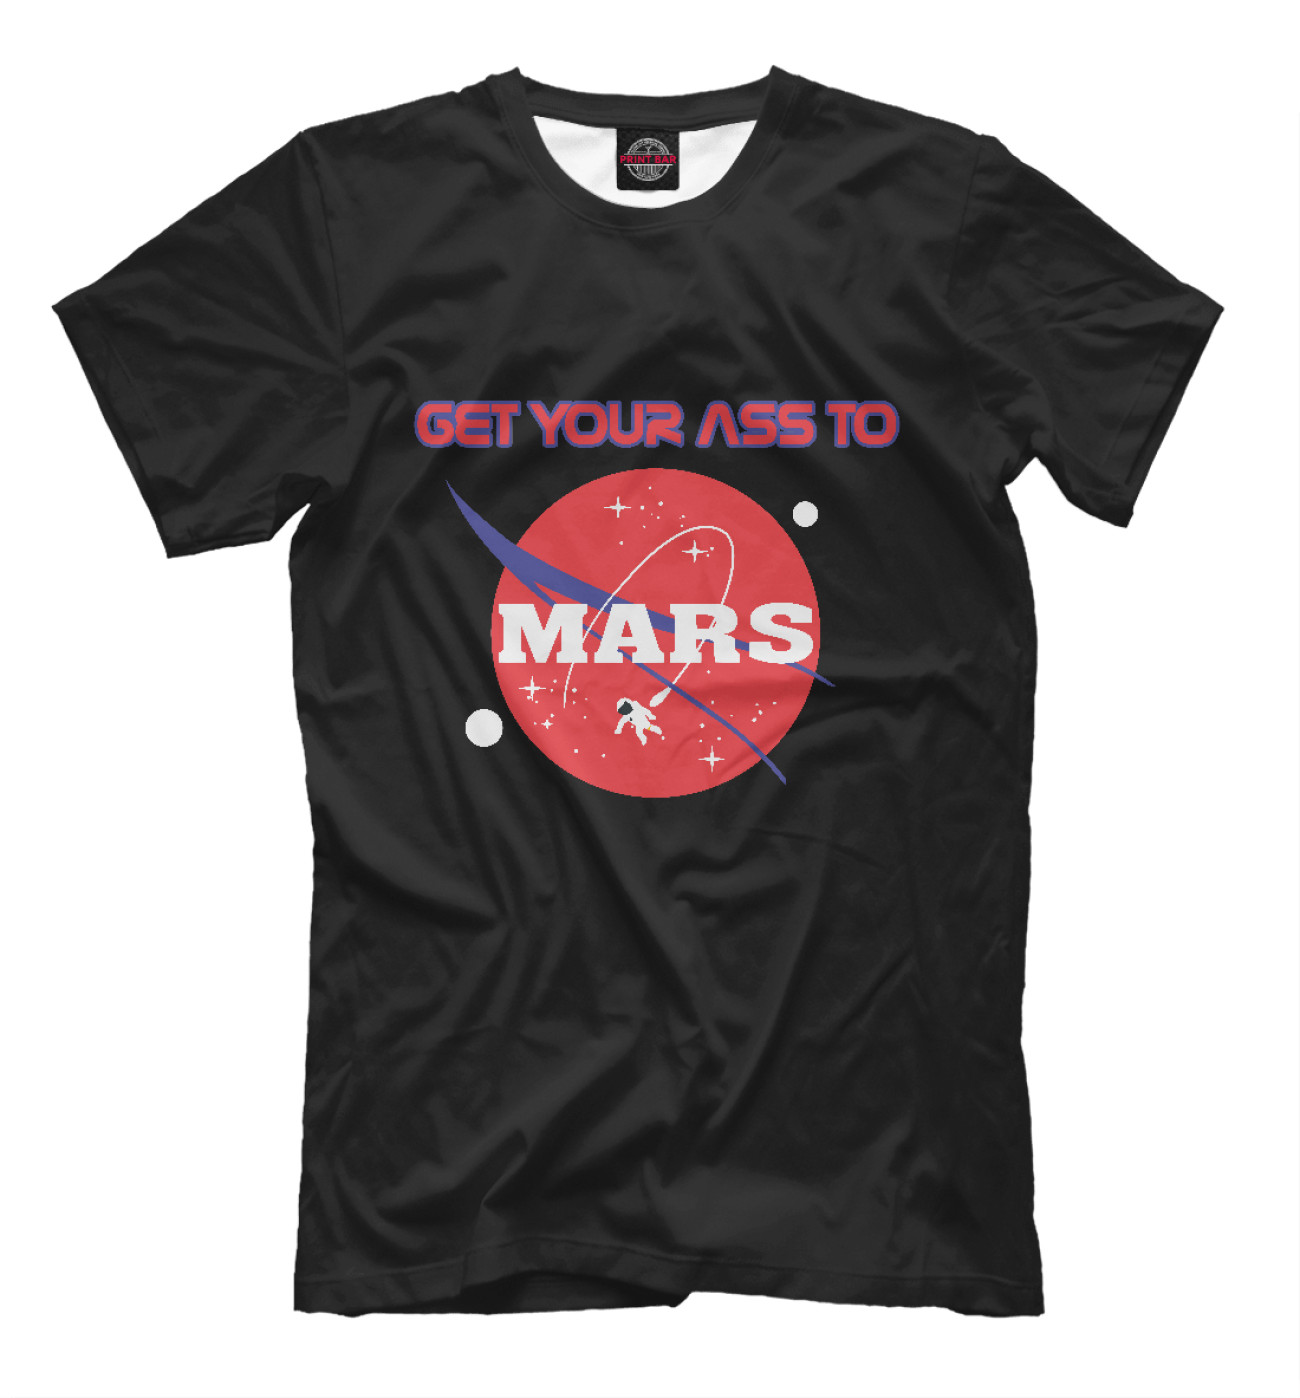 Мужская Футболка Get Your Ass to Mars, артикул: APD-189173-fut-2